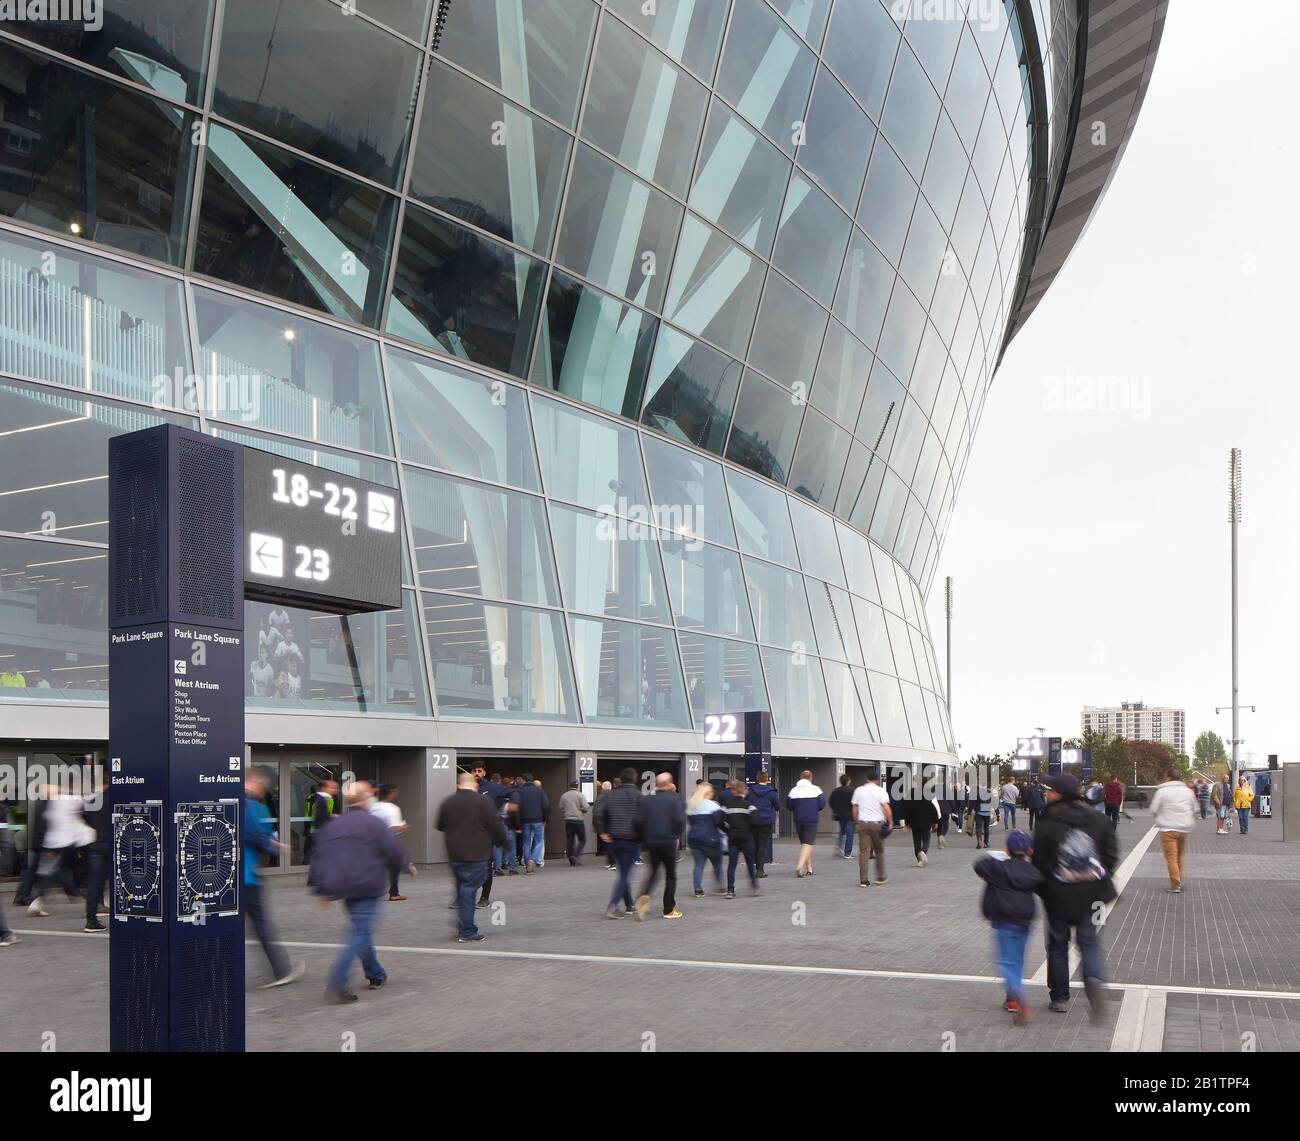 Système de guidage avec signalisation numérique à côté du stade. The New Tottenham Hotspur Stadium, Londres, Royaume-Uni. Architecte: Populeux, 2019. Banque D'Images